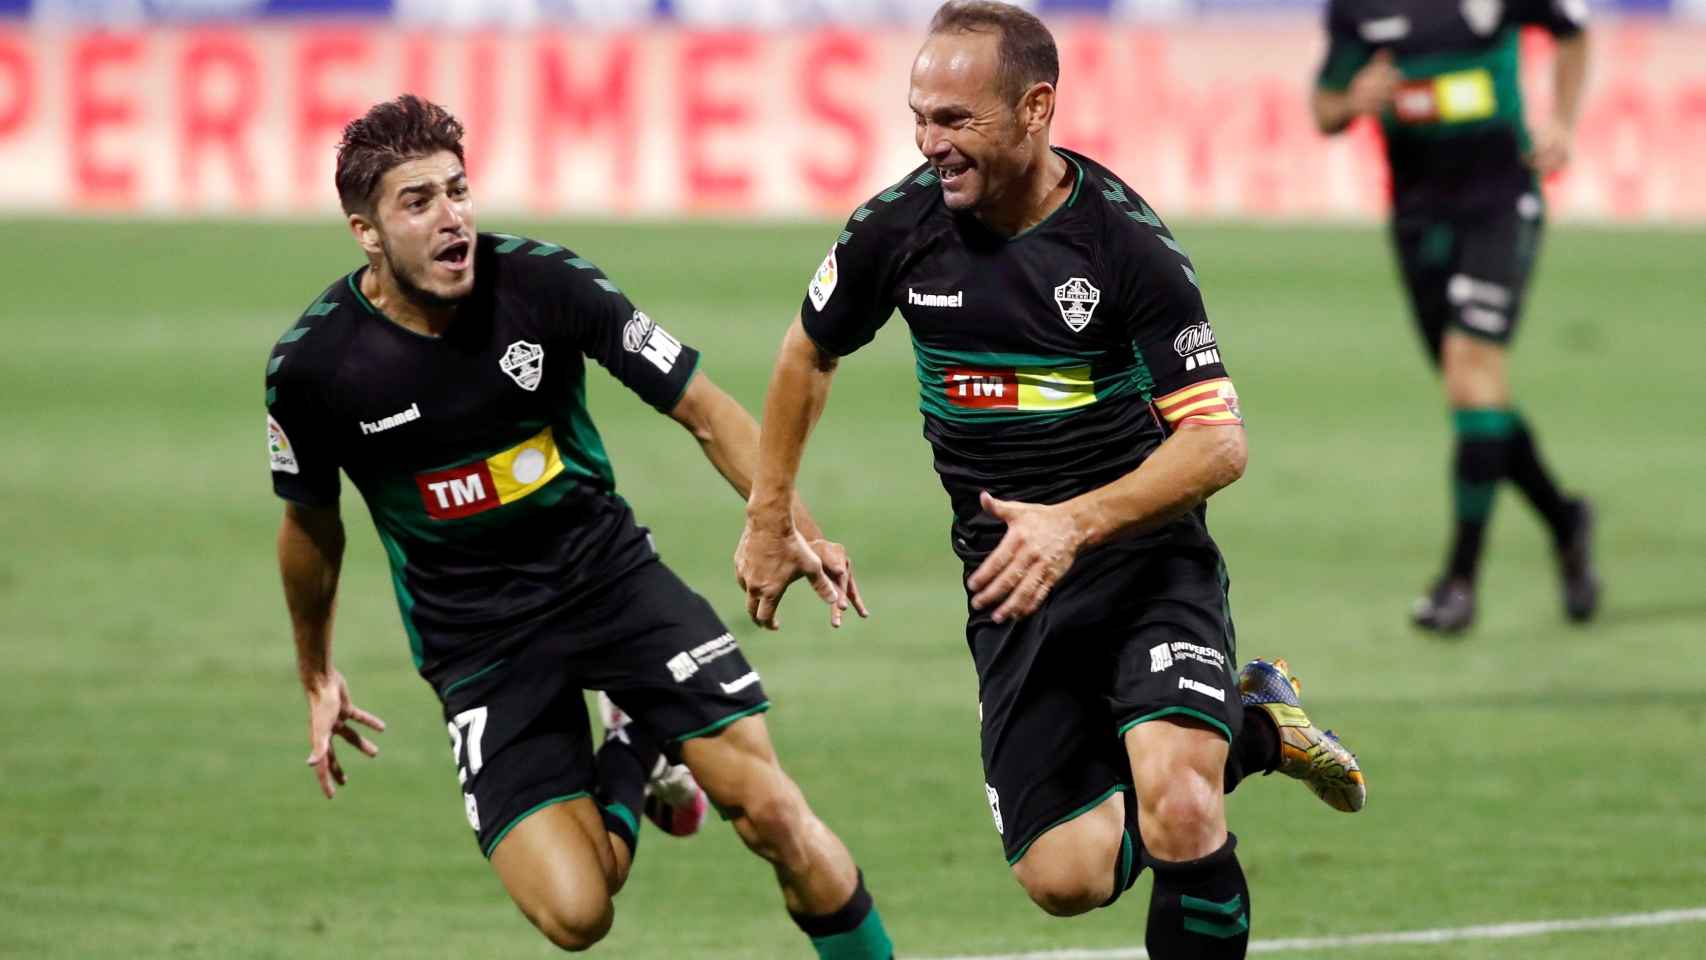 Nino celebra su gol con el Elche